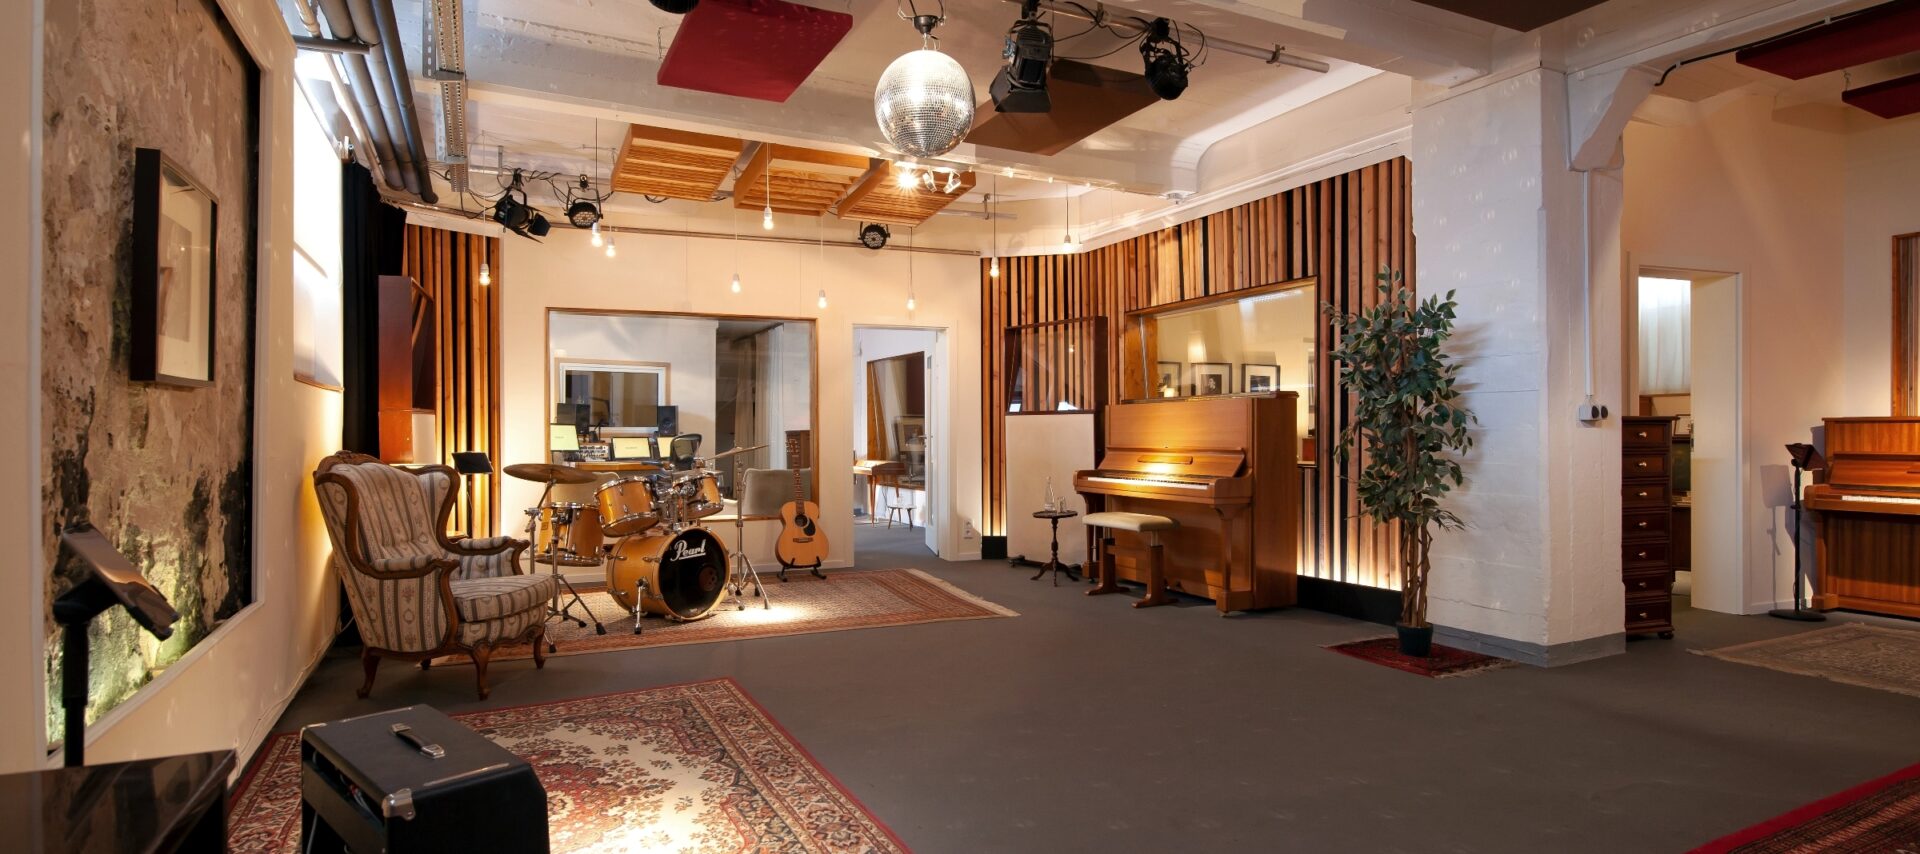 Blick in großes Tonstudio mit Klavier, Schlagzeug und weiteren Räumen.